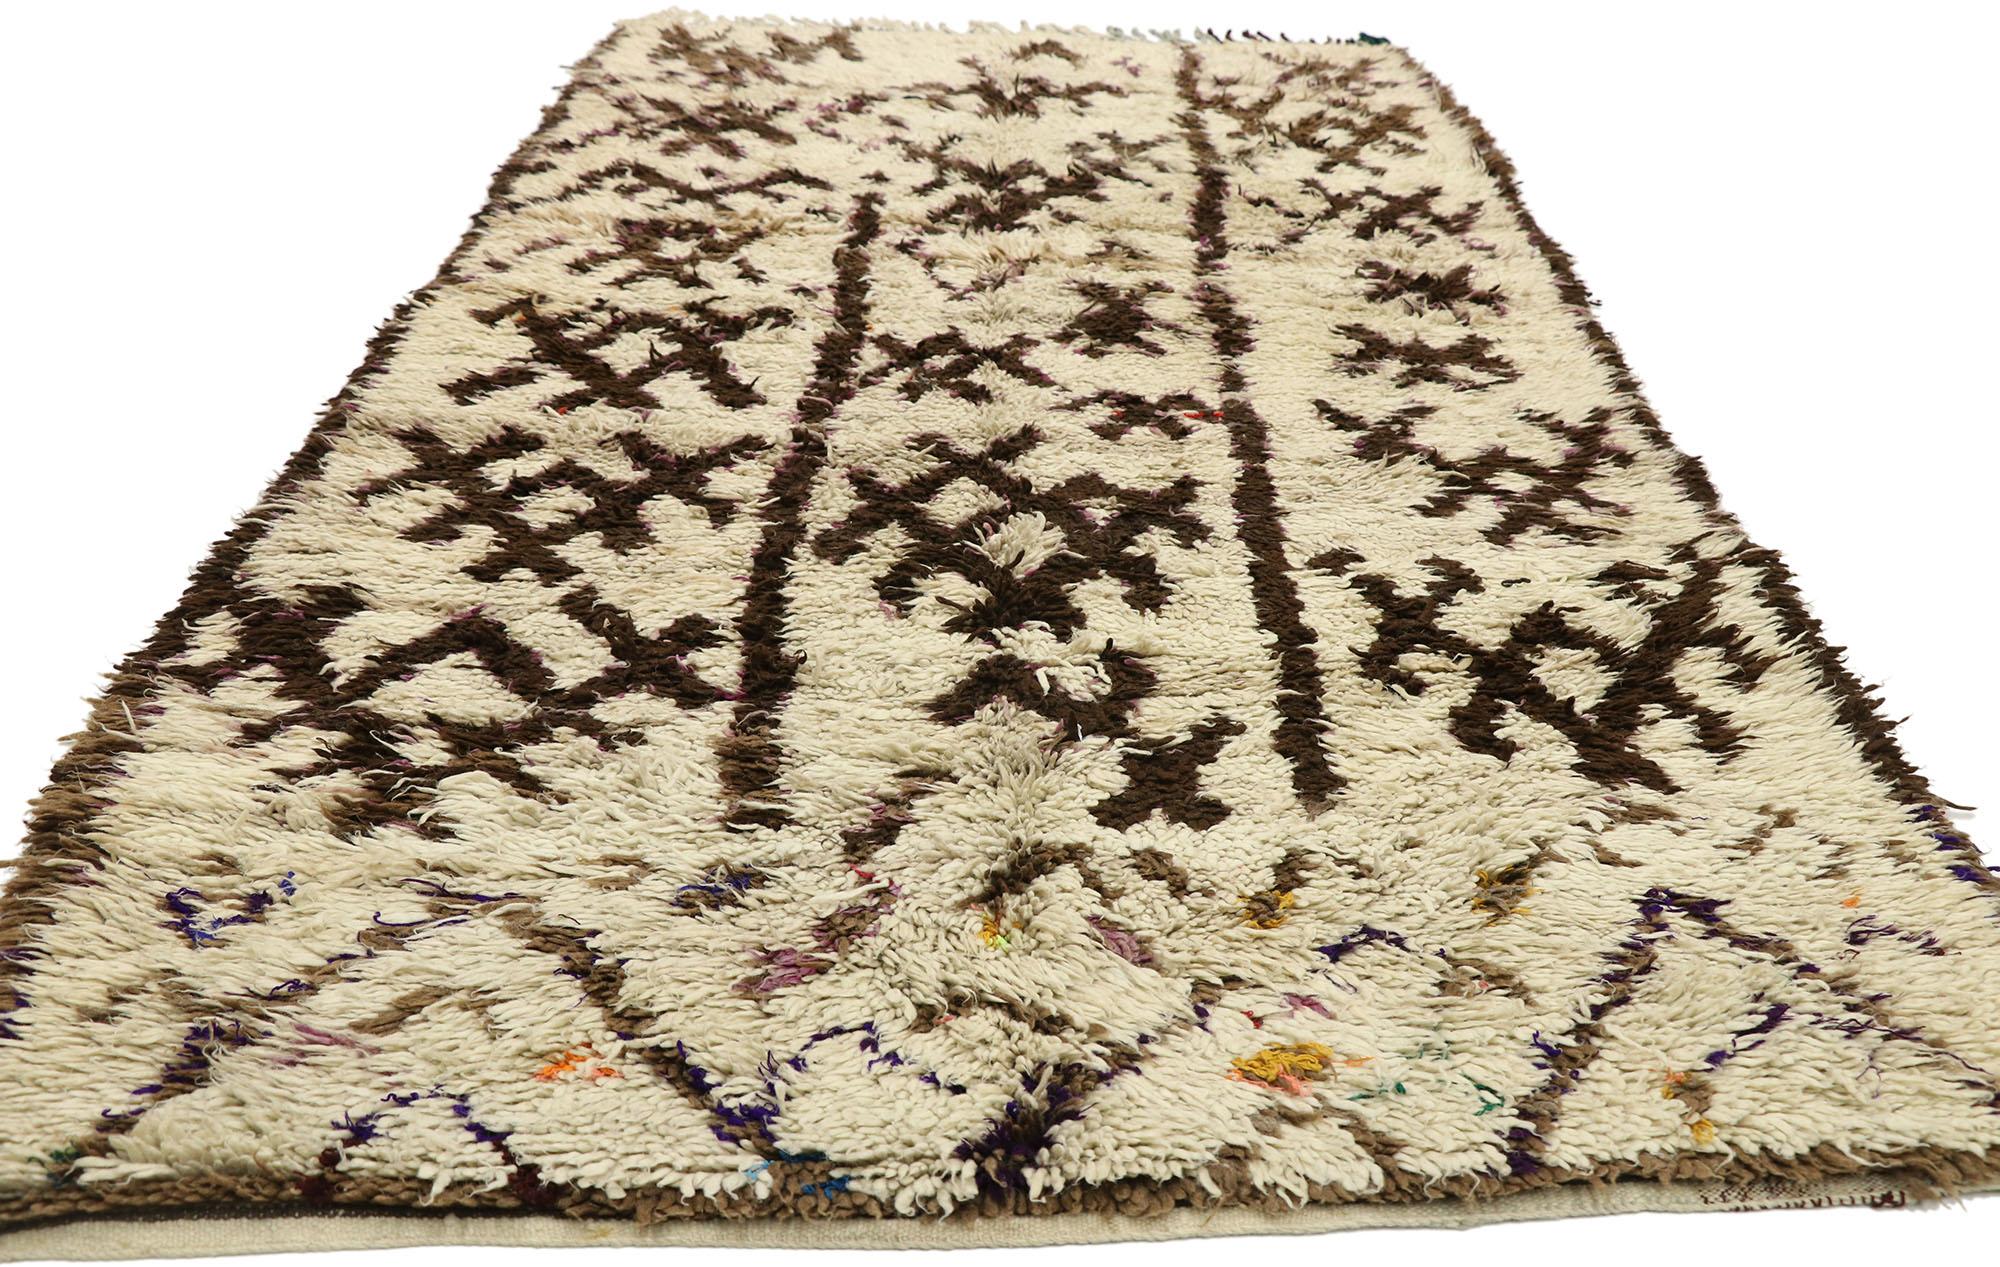 20293 Vintage Marokkanischer Azilal-Teppich, 04'09 x 10'10. Begeben Sie sich auf eine fesselnde Reise in das lebendige Erbe der Azilal-Teppiche, die aus dem geschäftigen Zentrum der Provinzhauptstadt in Zentralmarokko stammen, die inmitten des